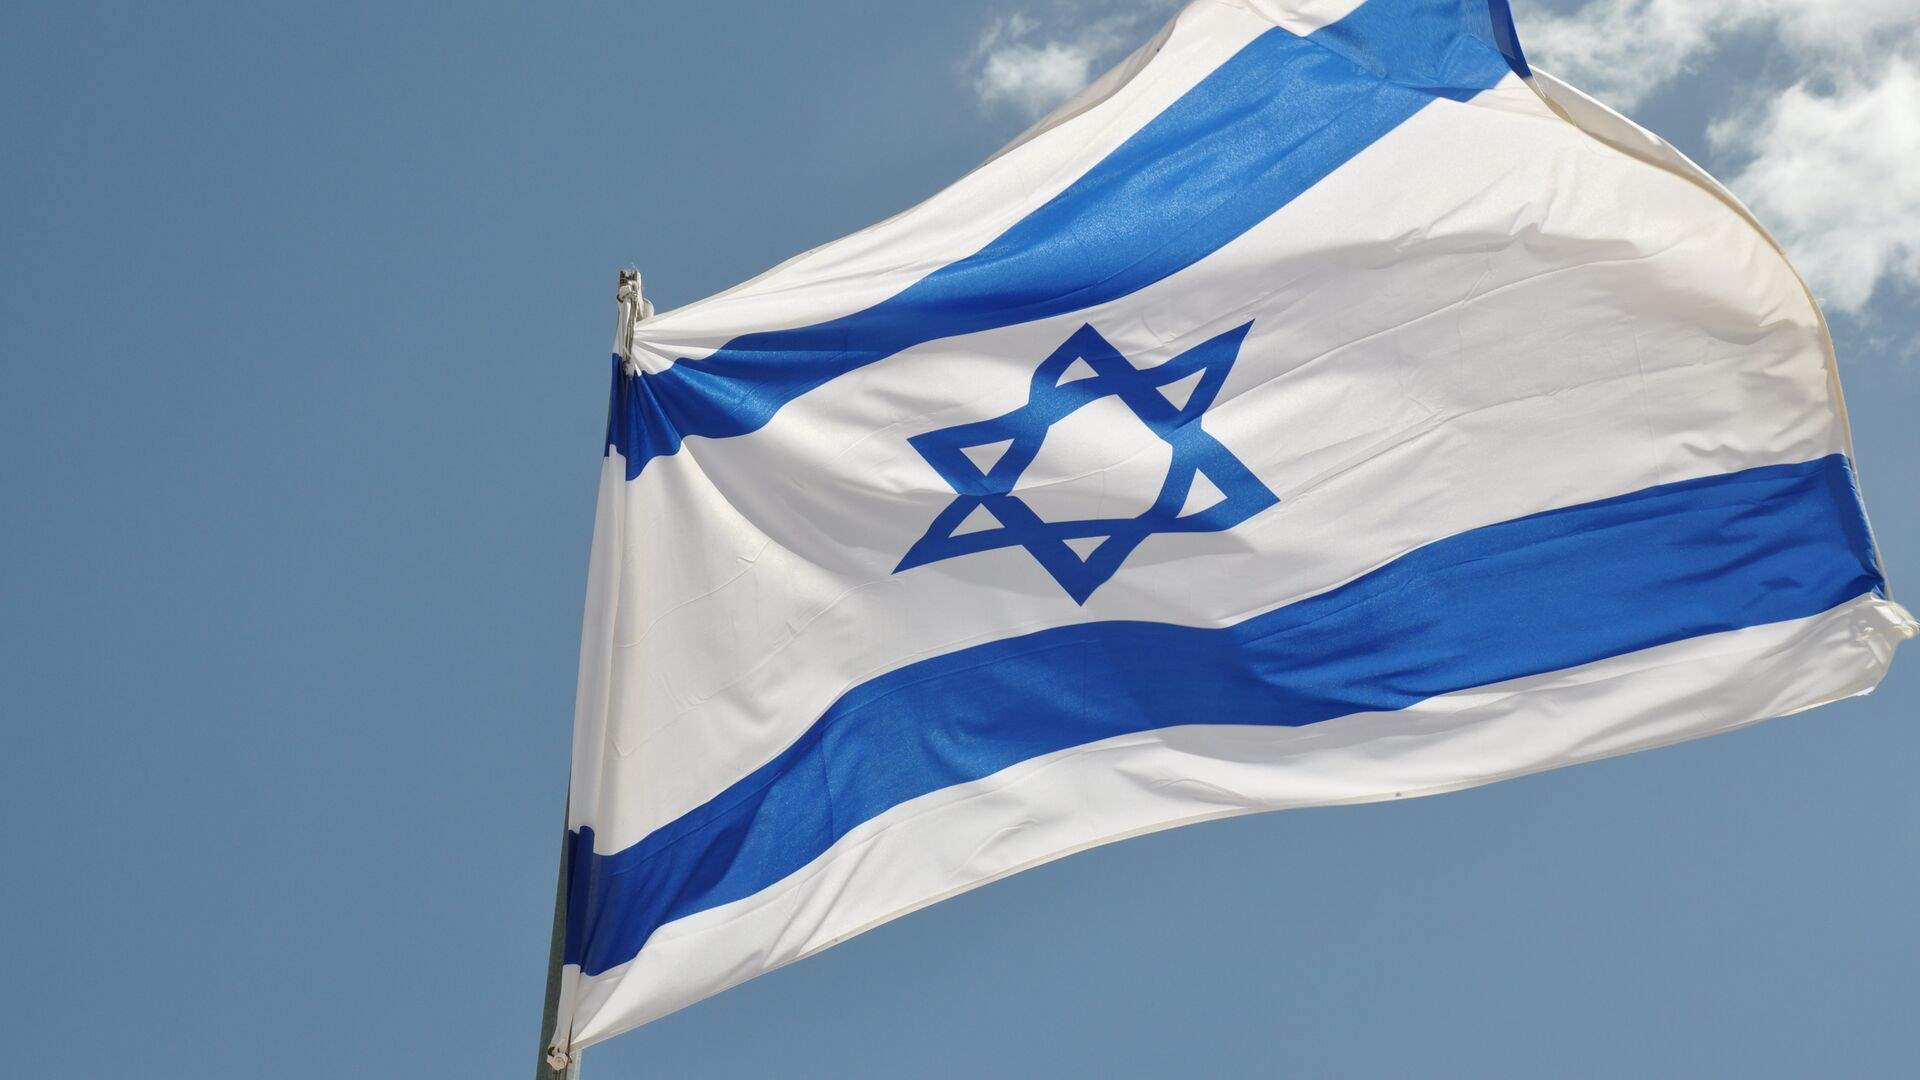 إسرائيل تنصح مواطنيها بعدم السفر إلى مالمو السويدية خلال فعاليات يوروفيجن